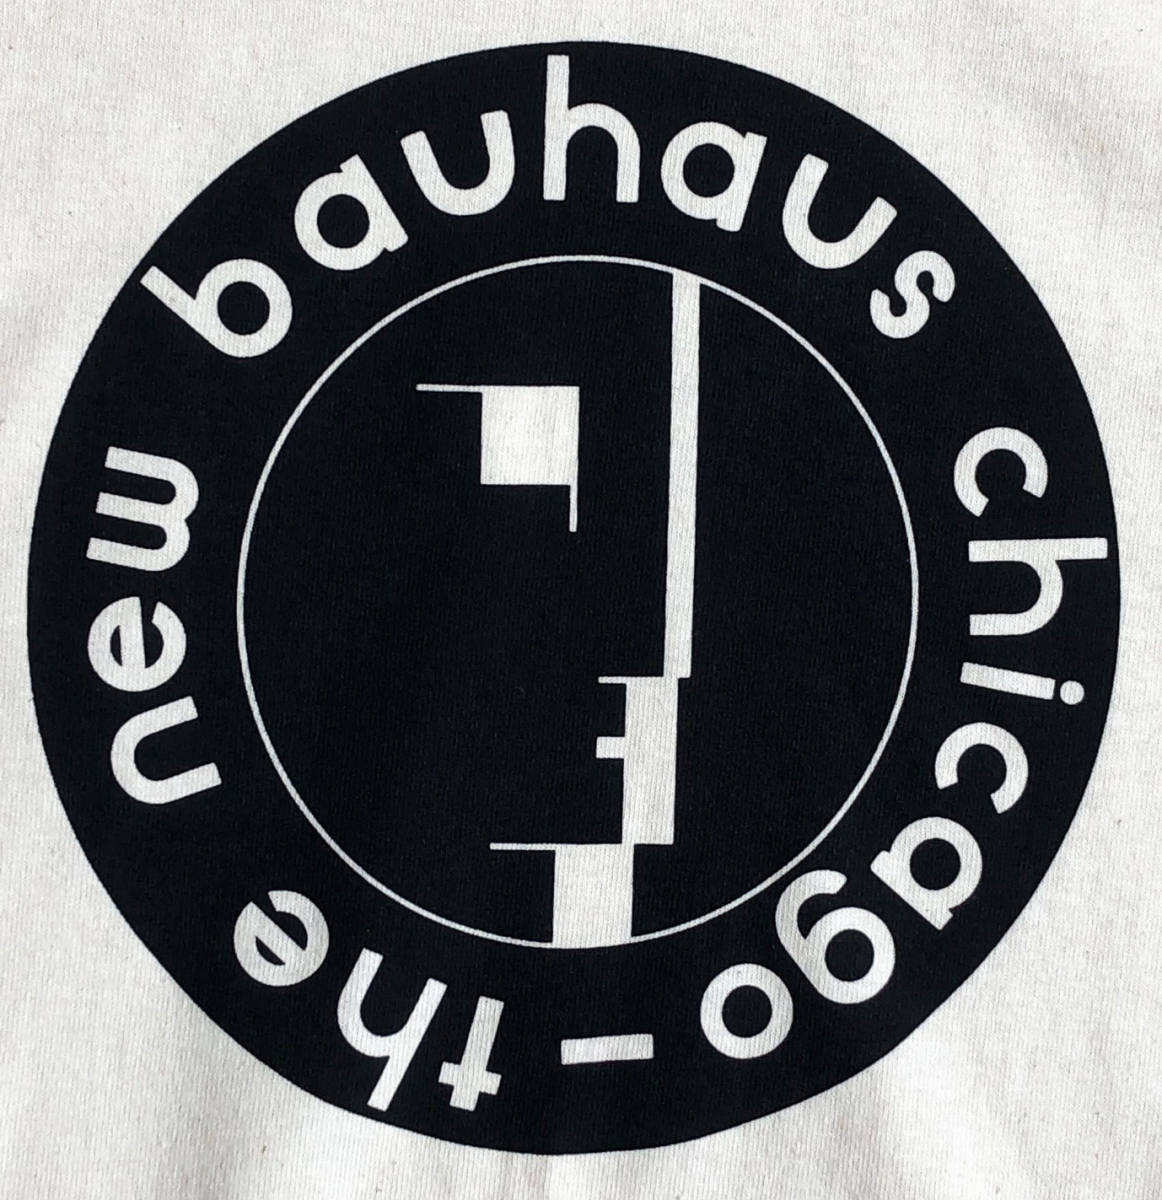 即決【海外買付/新品】The New Bauhaus chicago ロゴ Tシャツ/ナチュラル/Lサイズ/バウハウス/激レア/アートTシャツ(luz.ba.t.n)_画像4